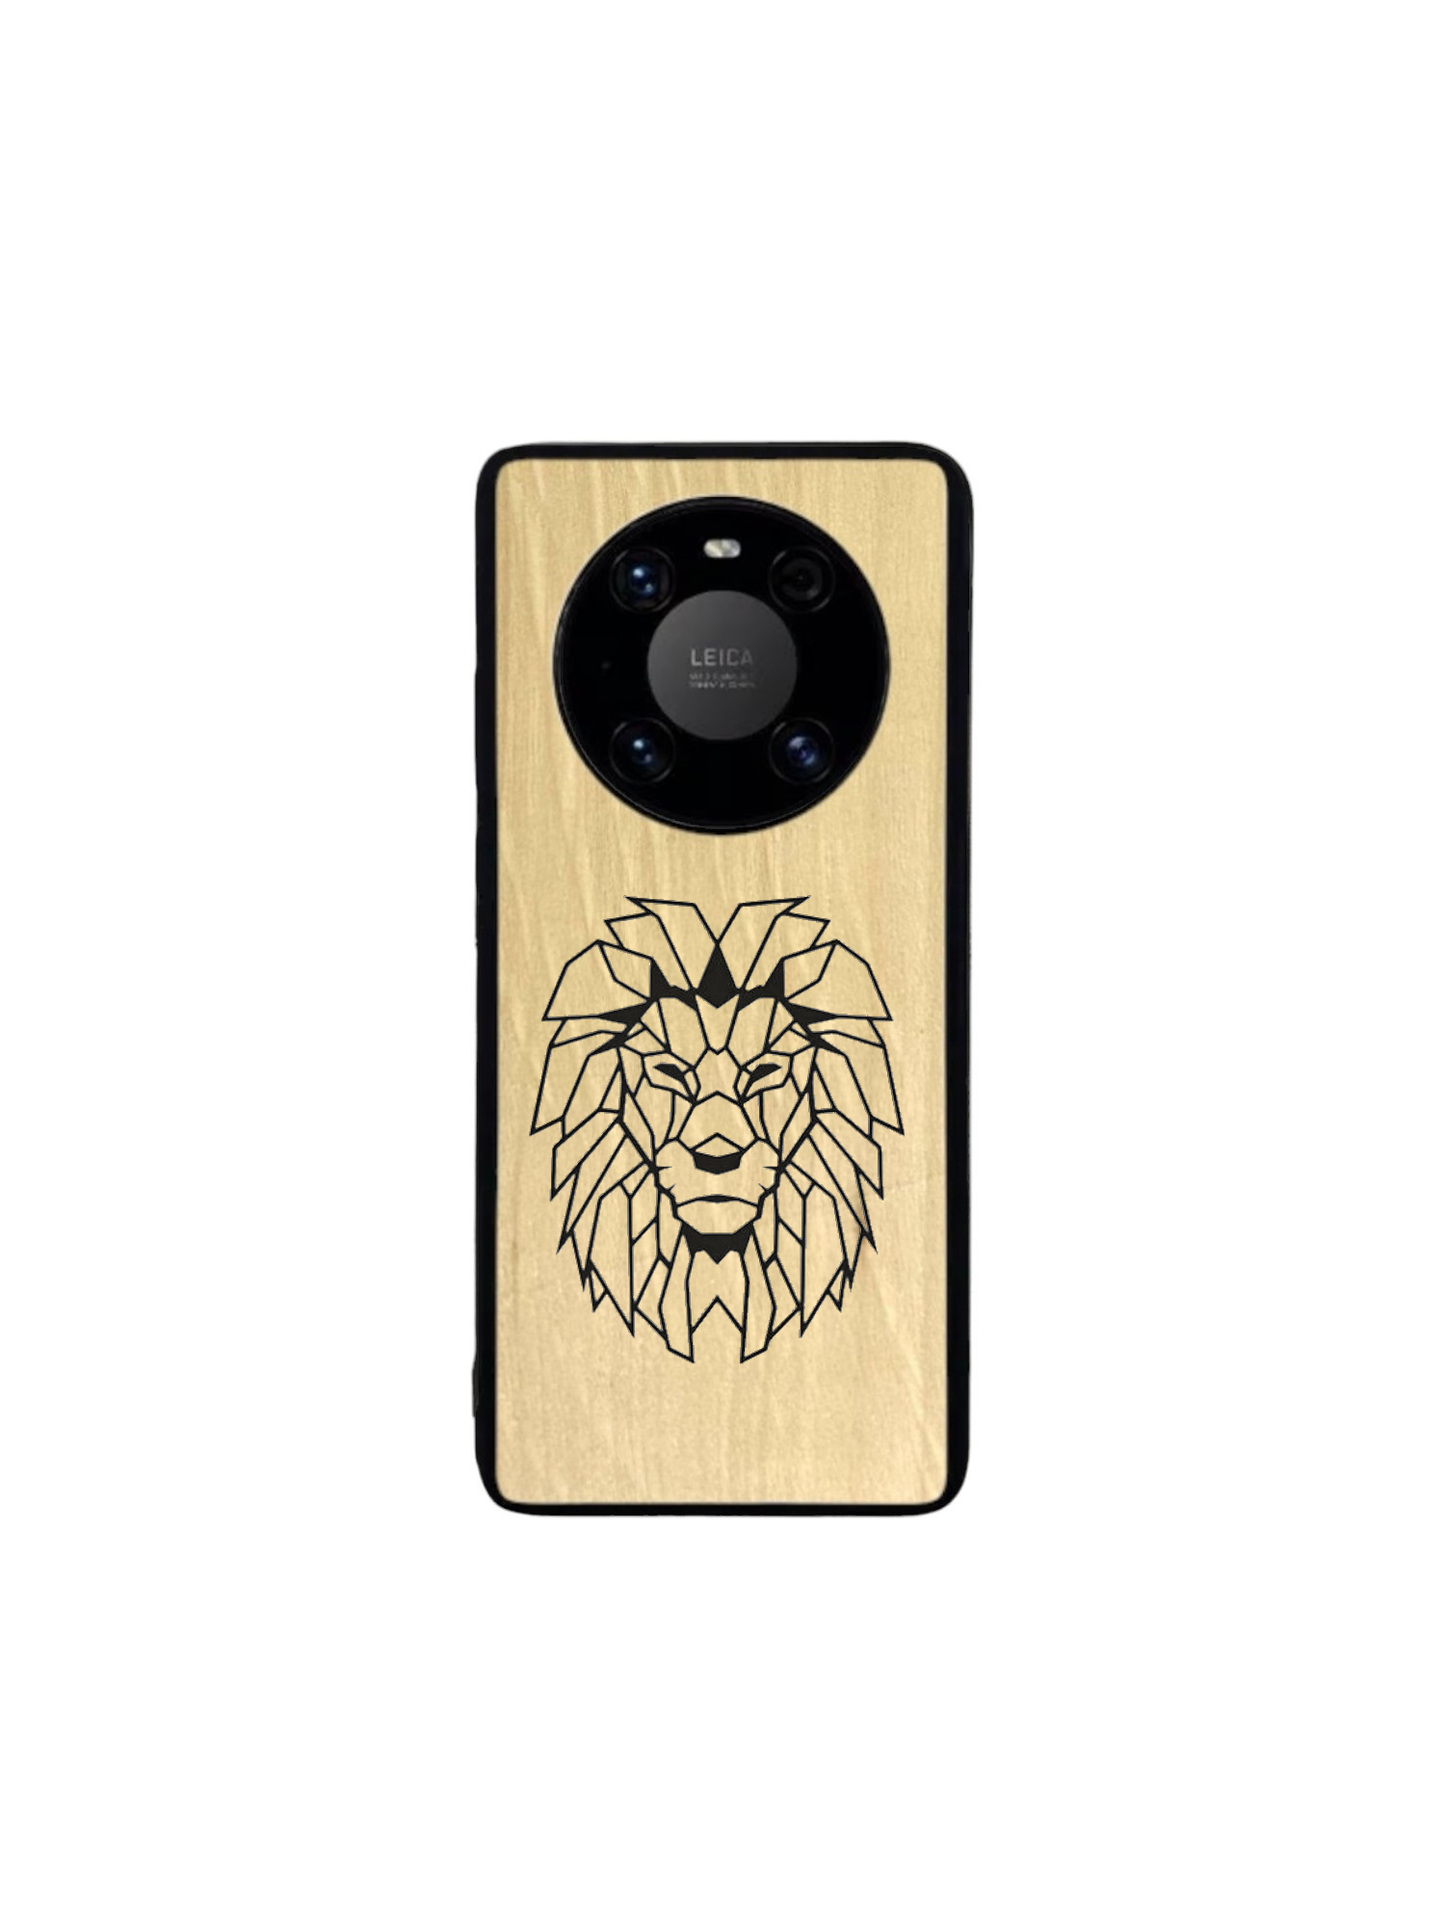 Huawei Mate case - Lion engraving